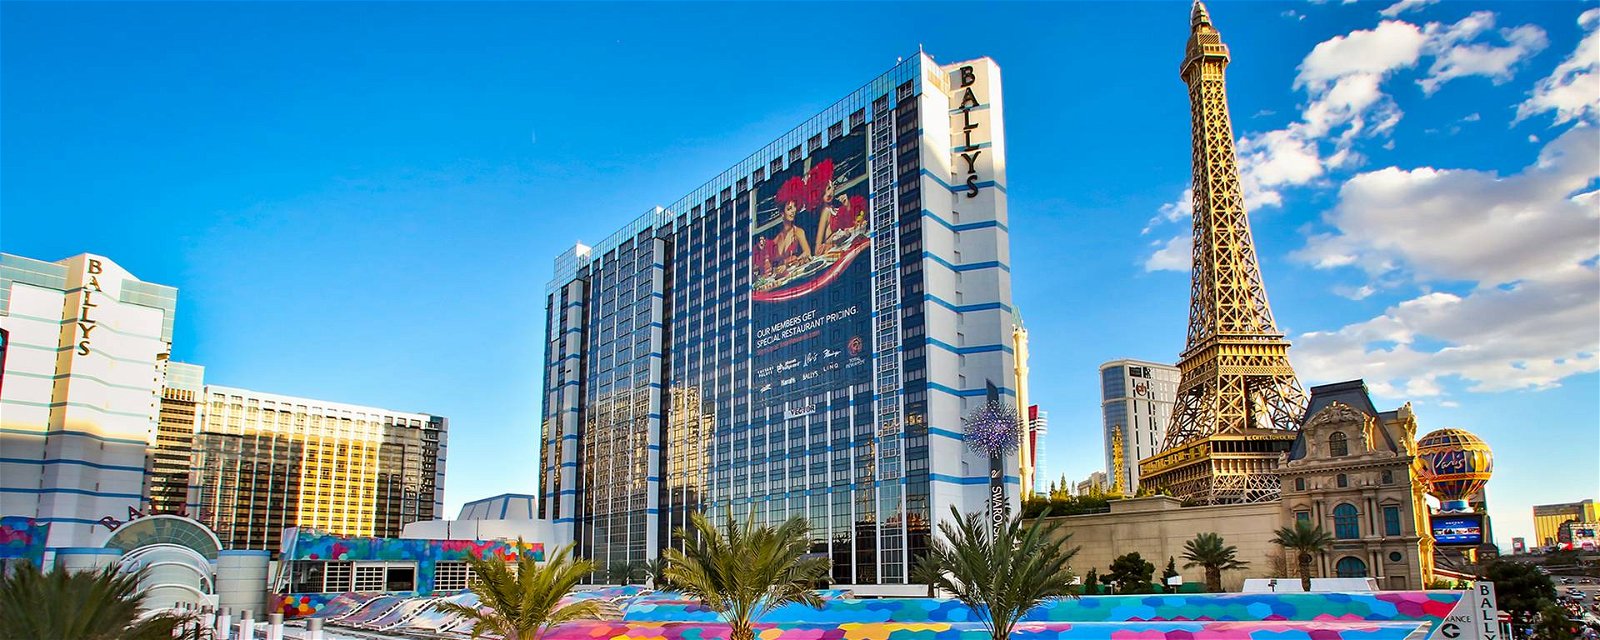 Bally's Hotel Las Vegas Deals & Promo Codes